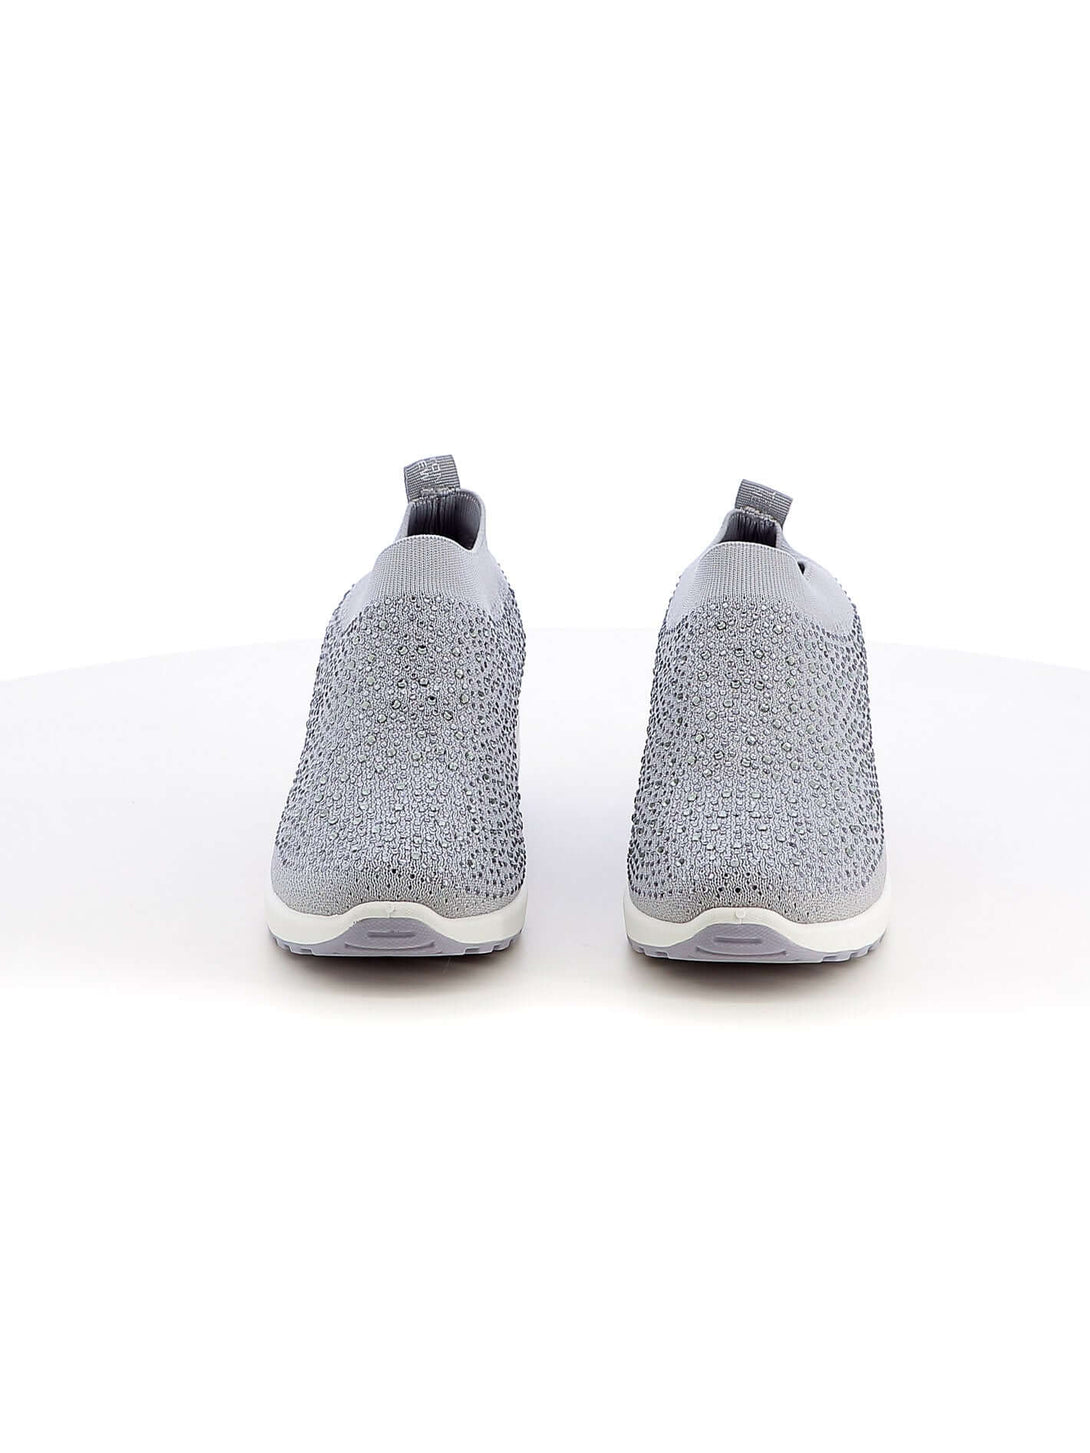 Sneakers calzino donna COTTON BELT CBW316524 grigio chiaro | Costa Superstore